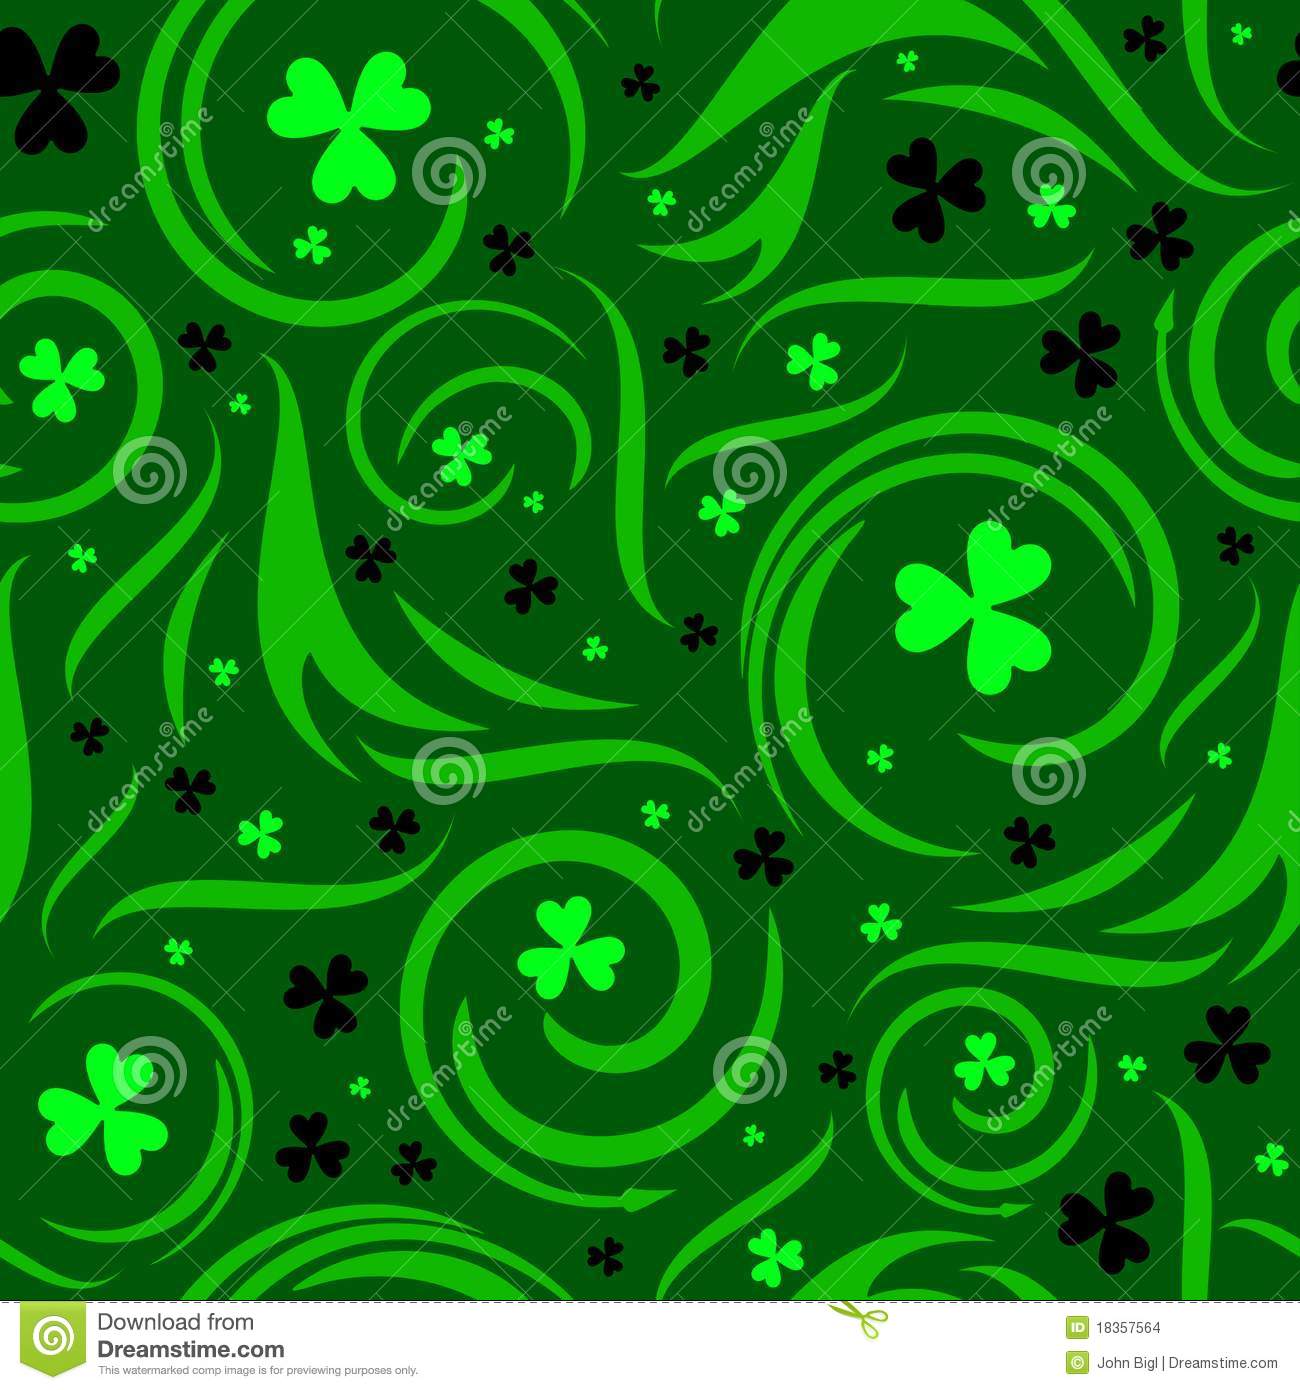 Irish Shamrock Wallpaper HD Seamless Background